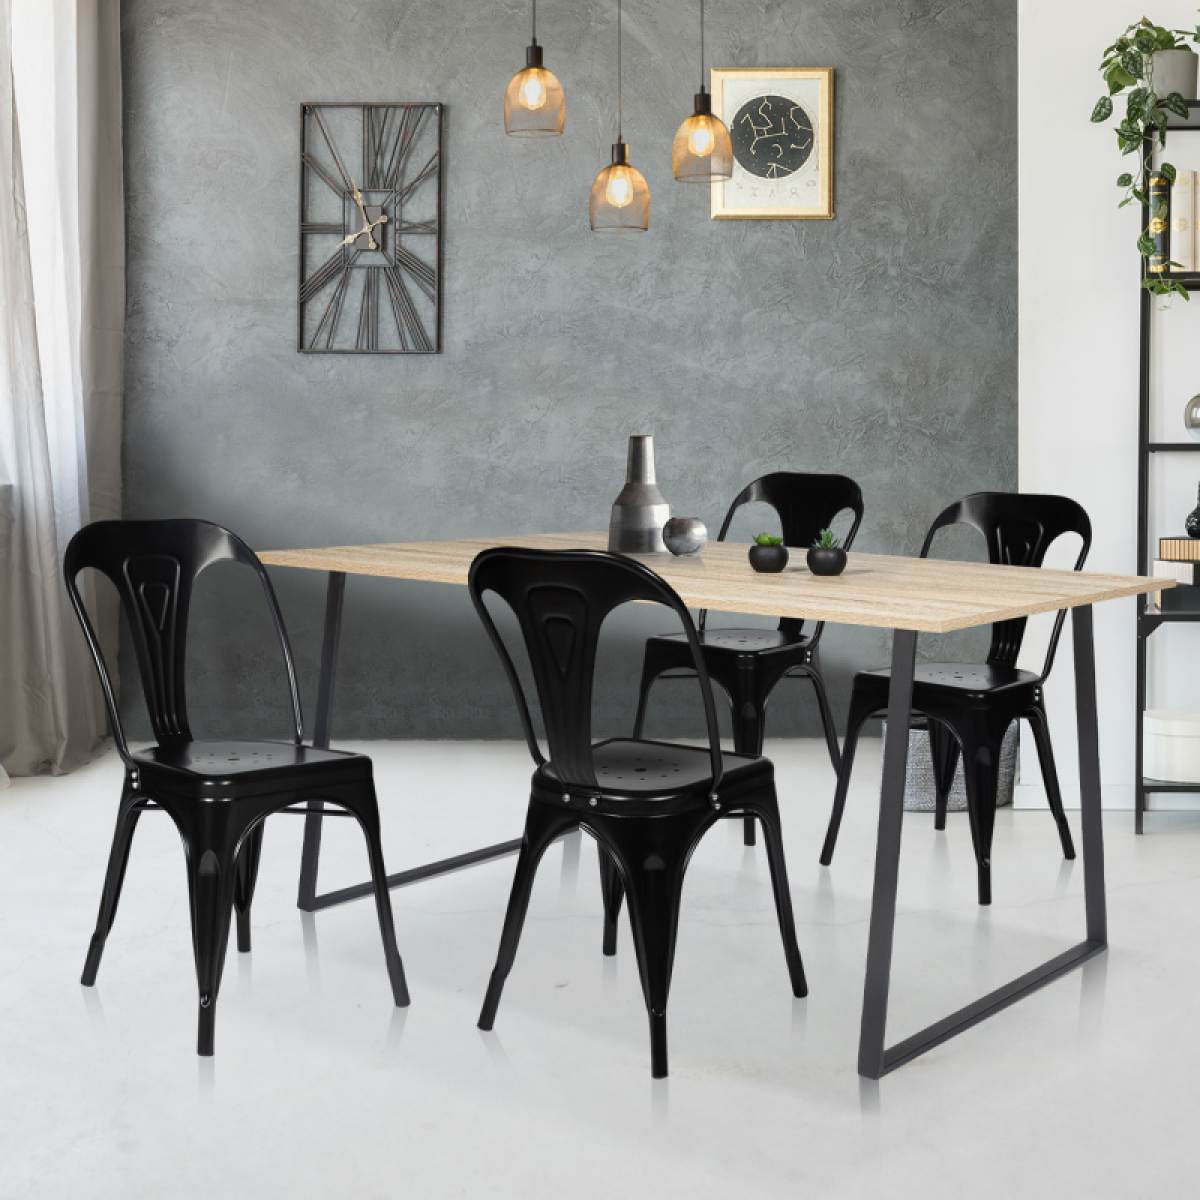 Idmarket - Lot de 2 chaises LENY métal noir mat empilable aspect brut factory - Chaises